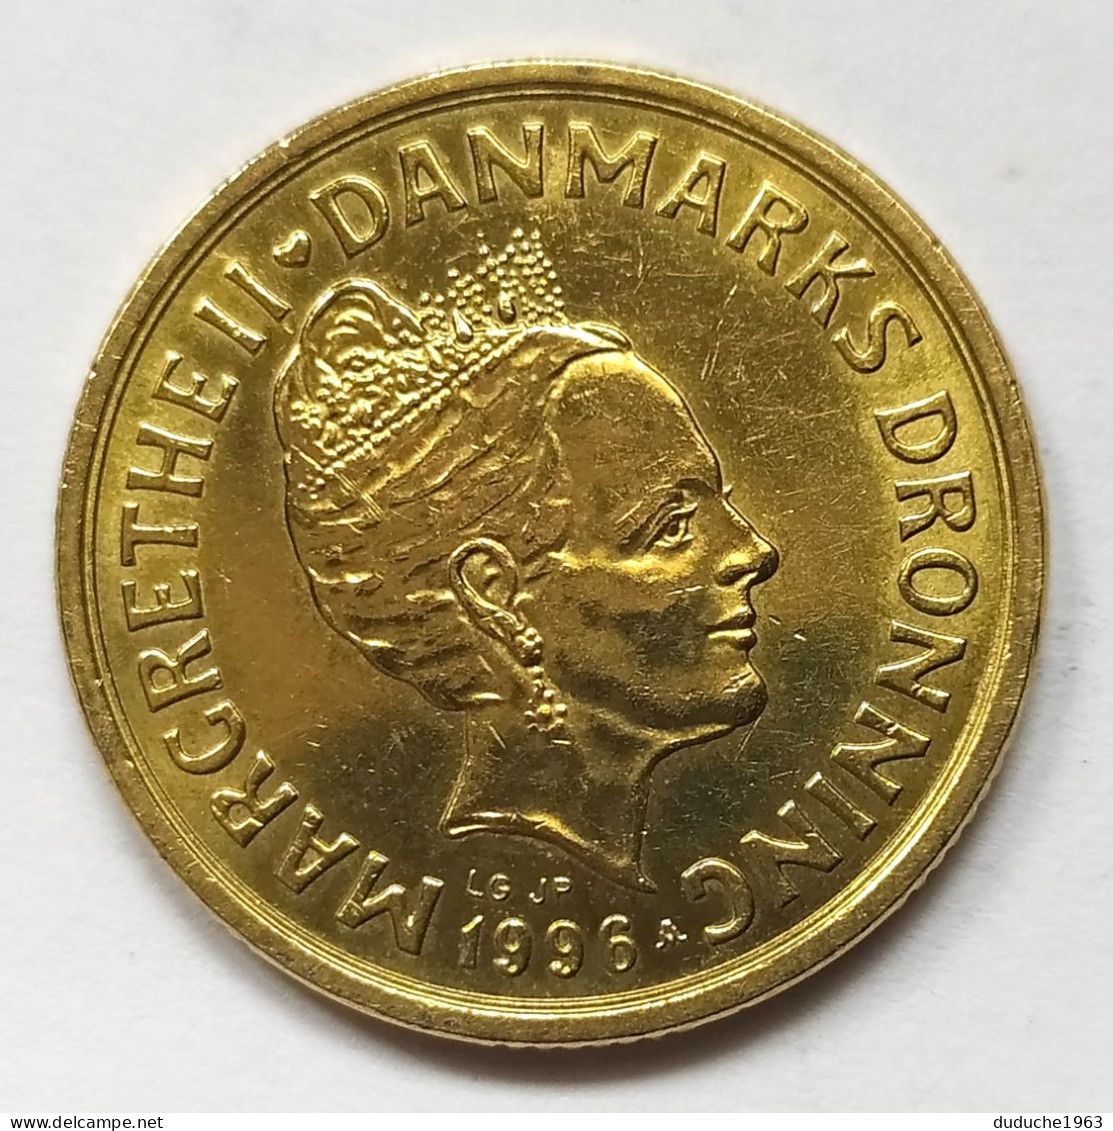 Danemark - 20 Kroner 1996 - Denmark